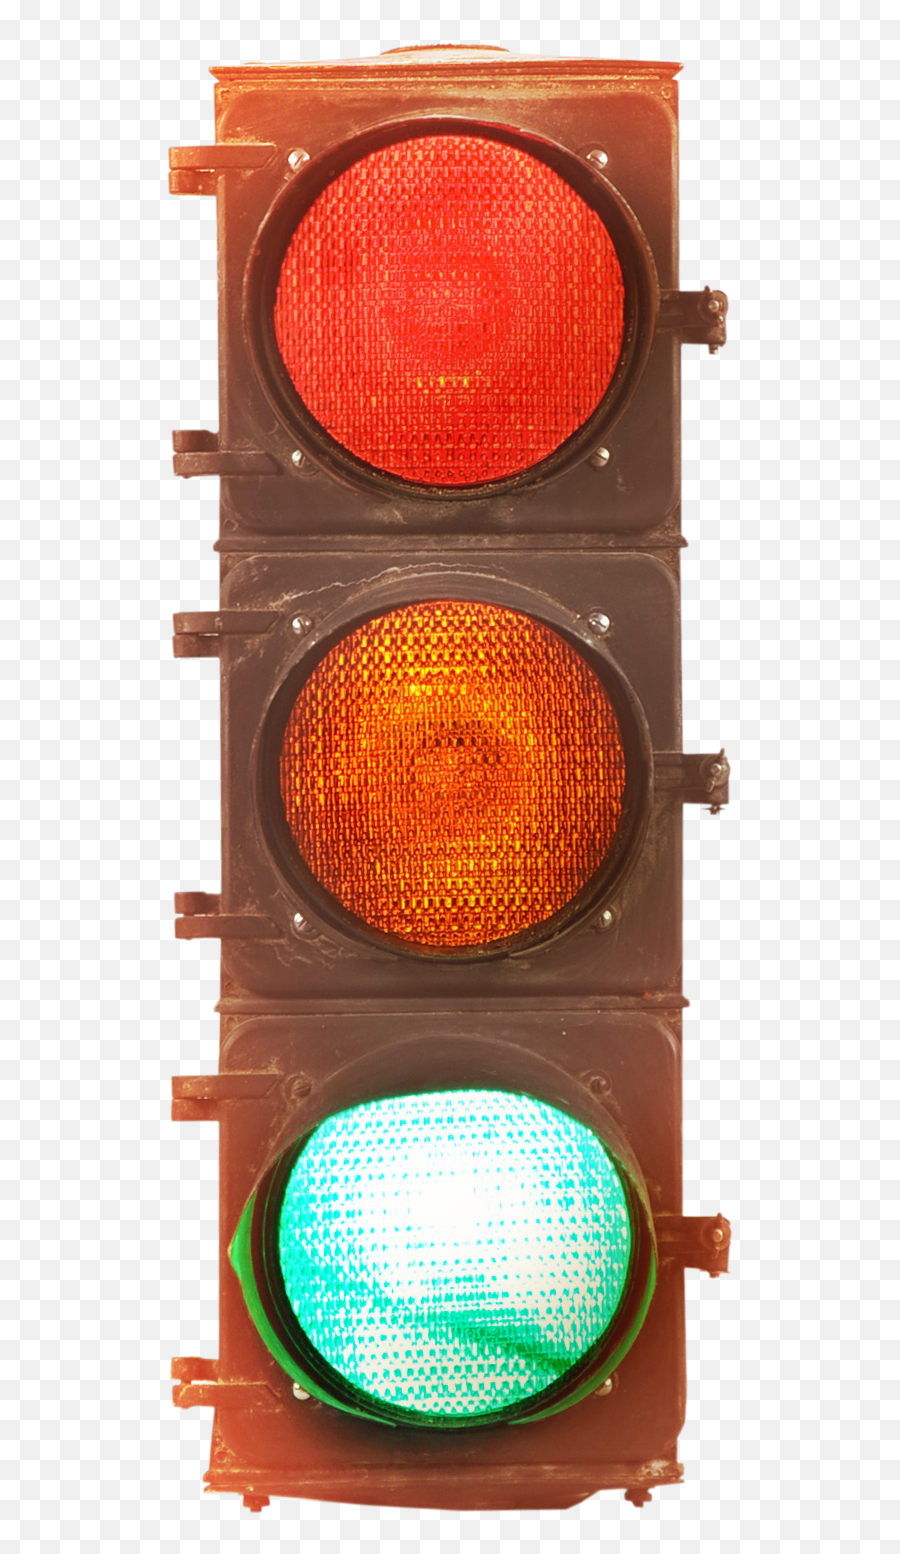 Download Traffic Lights Png Image For Free - Traffic Light Emoji,Lights Png